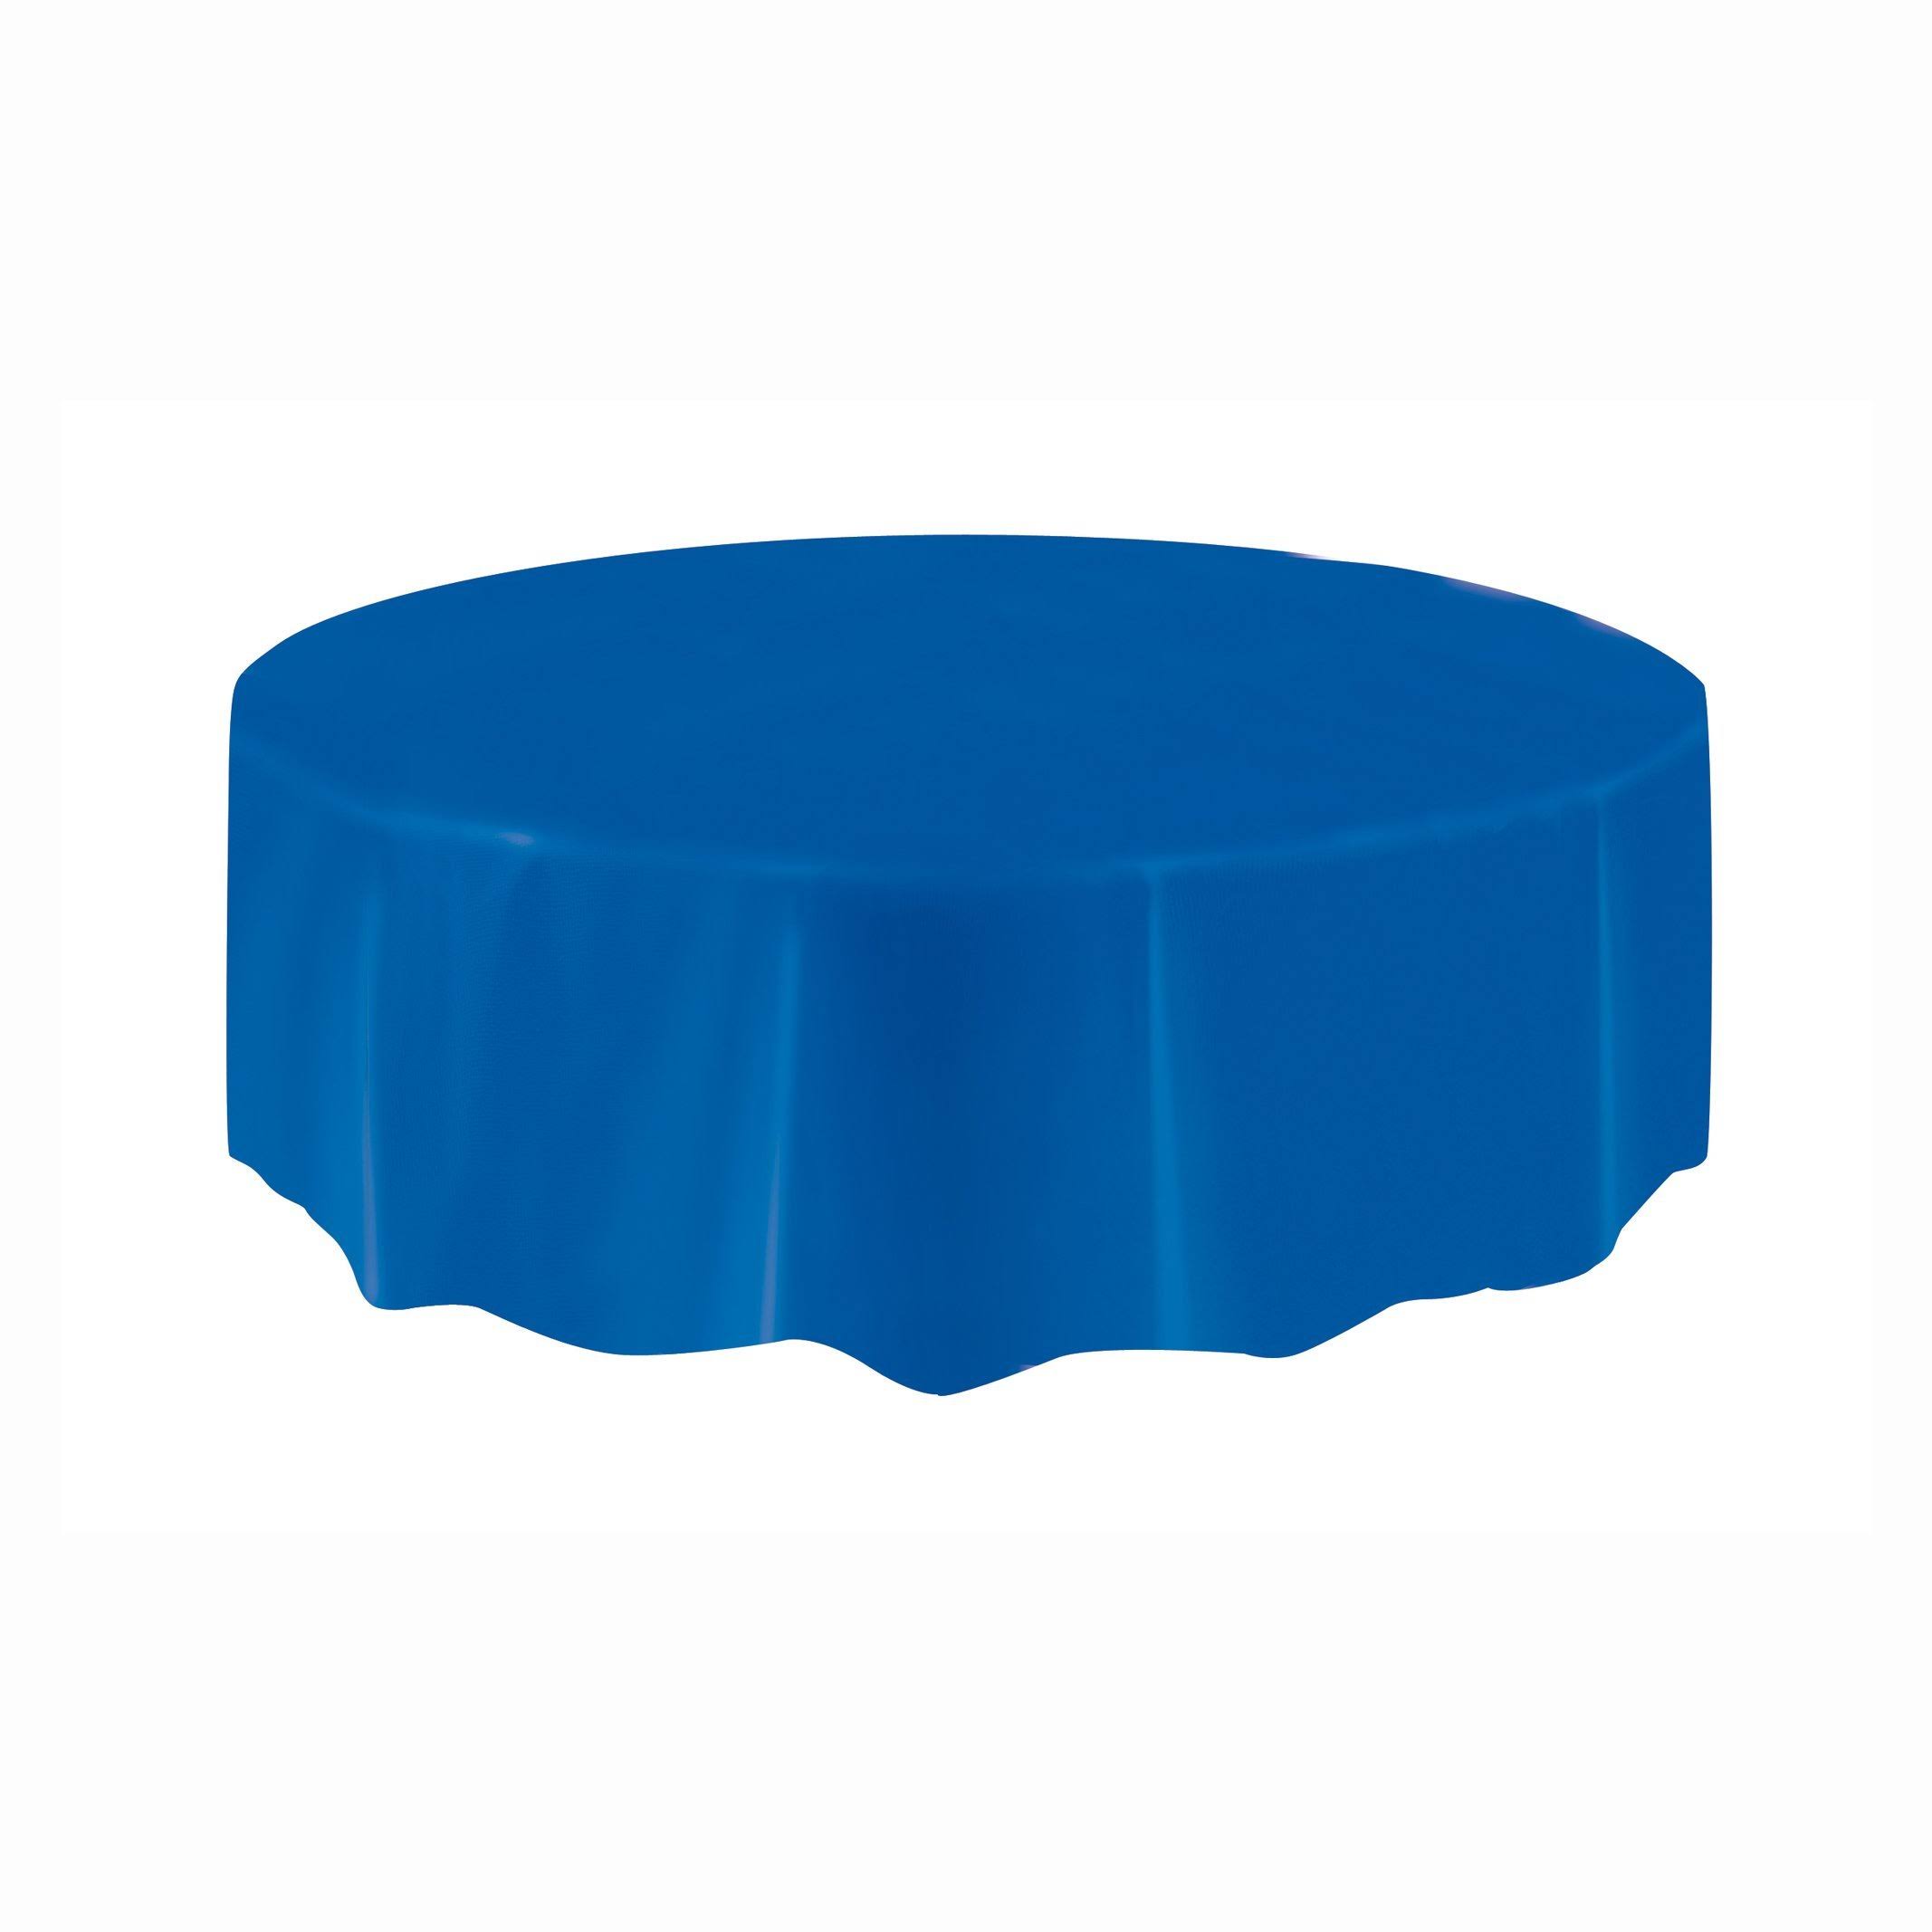 Unique Round Plastic Tablecloths Table Cover - 84" Dia, Royal Blue